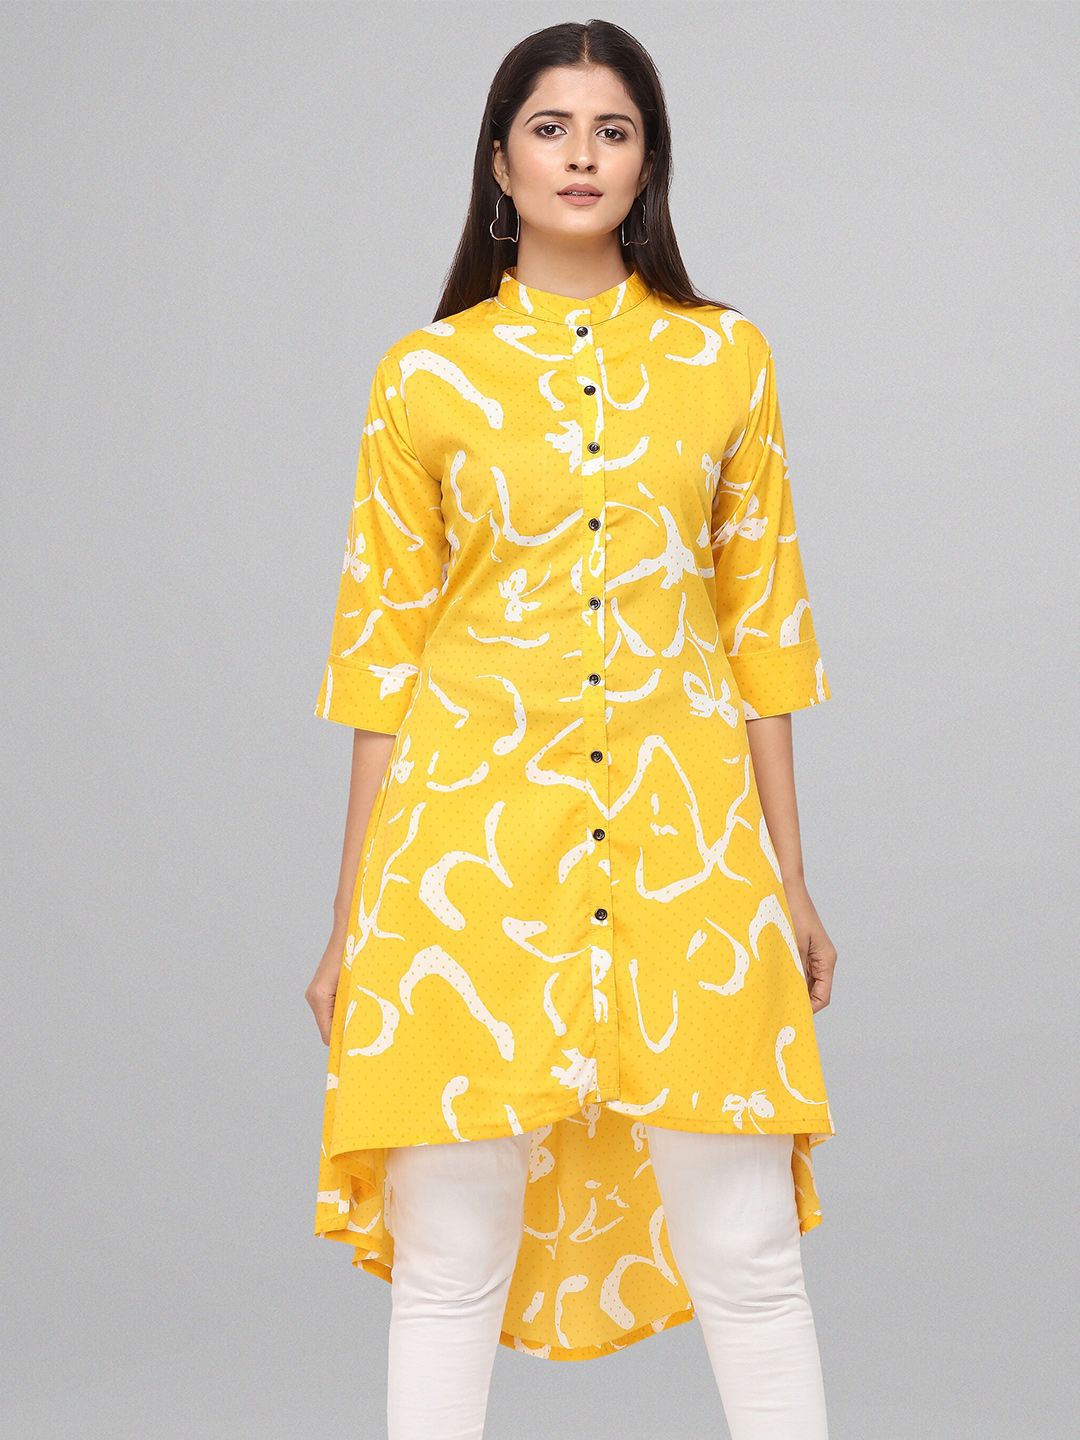 Fashfun Yellow Printed Kurti Price in India